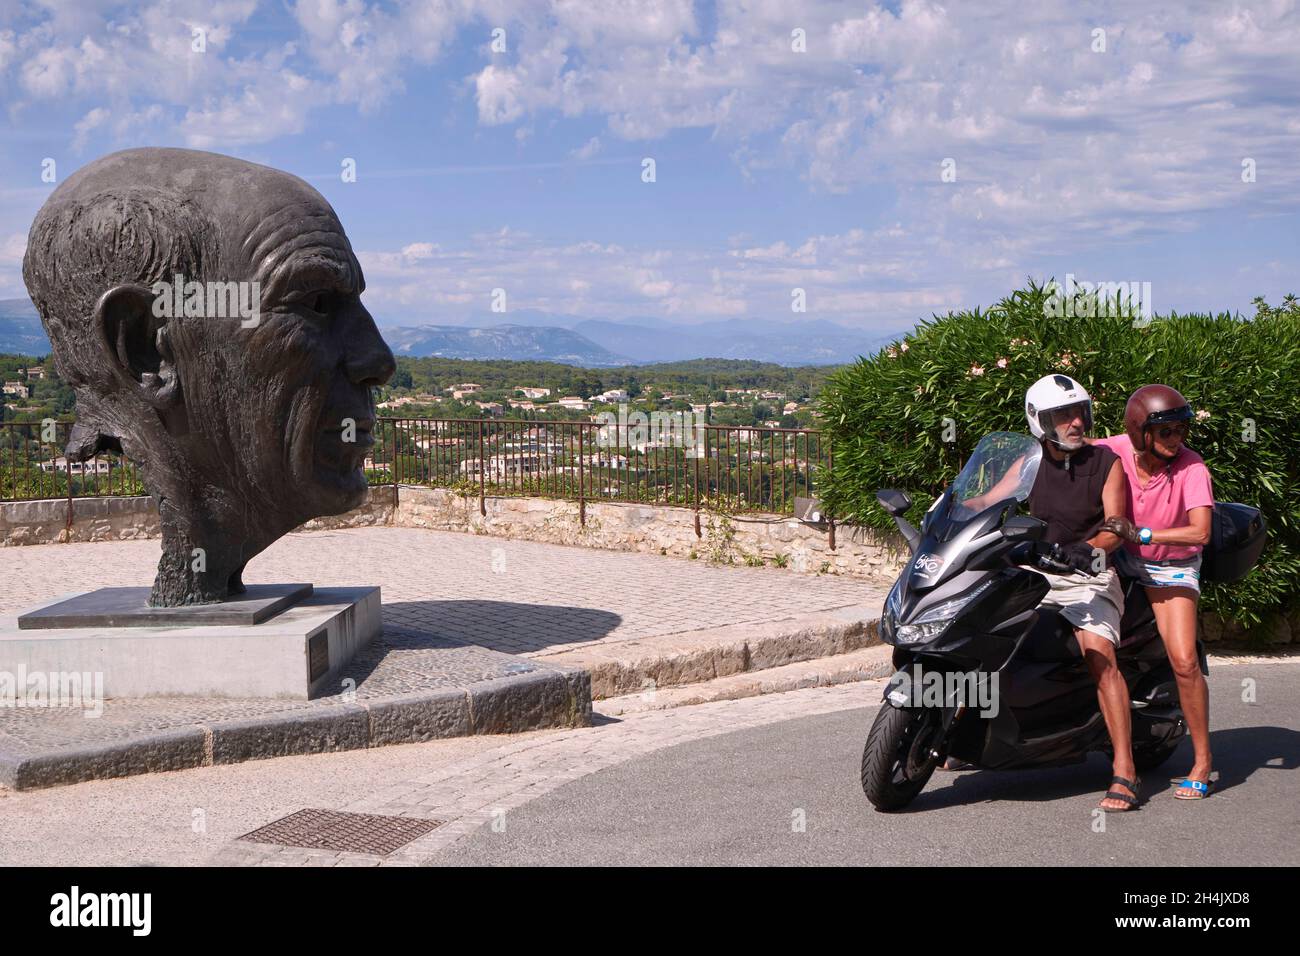 France, Alpes Maritimes, Mougins, statue de Pablo Picasso du sculpteur néerlandais Gabriel Sterk Banque D'Images